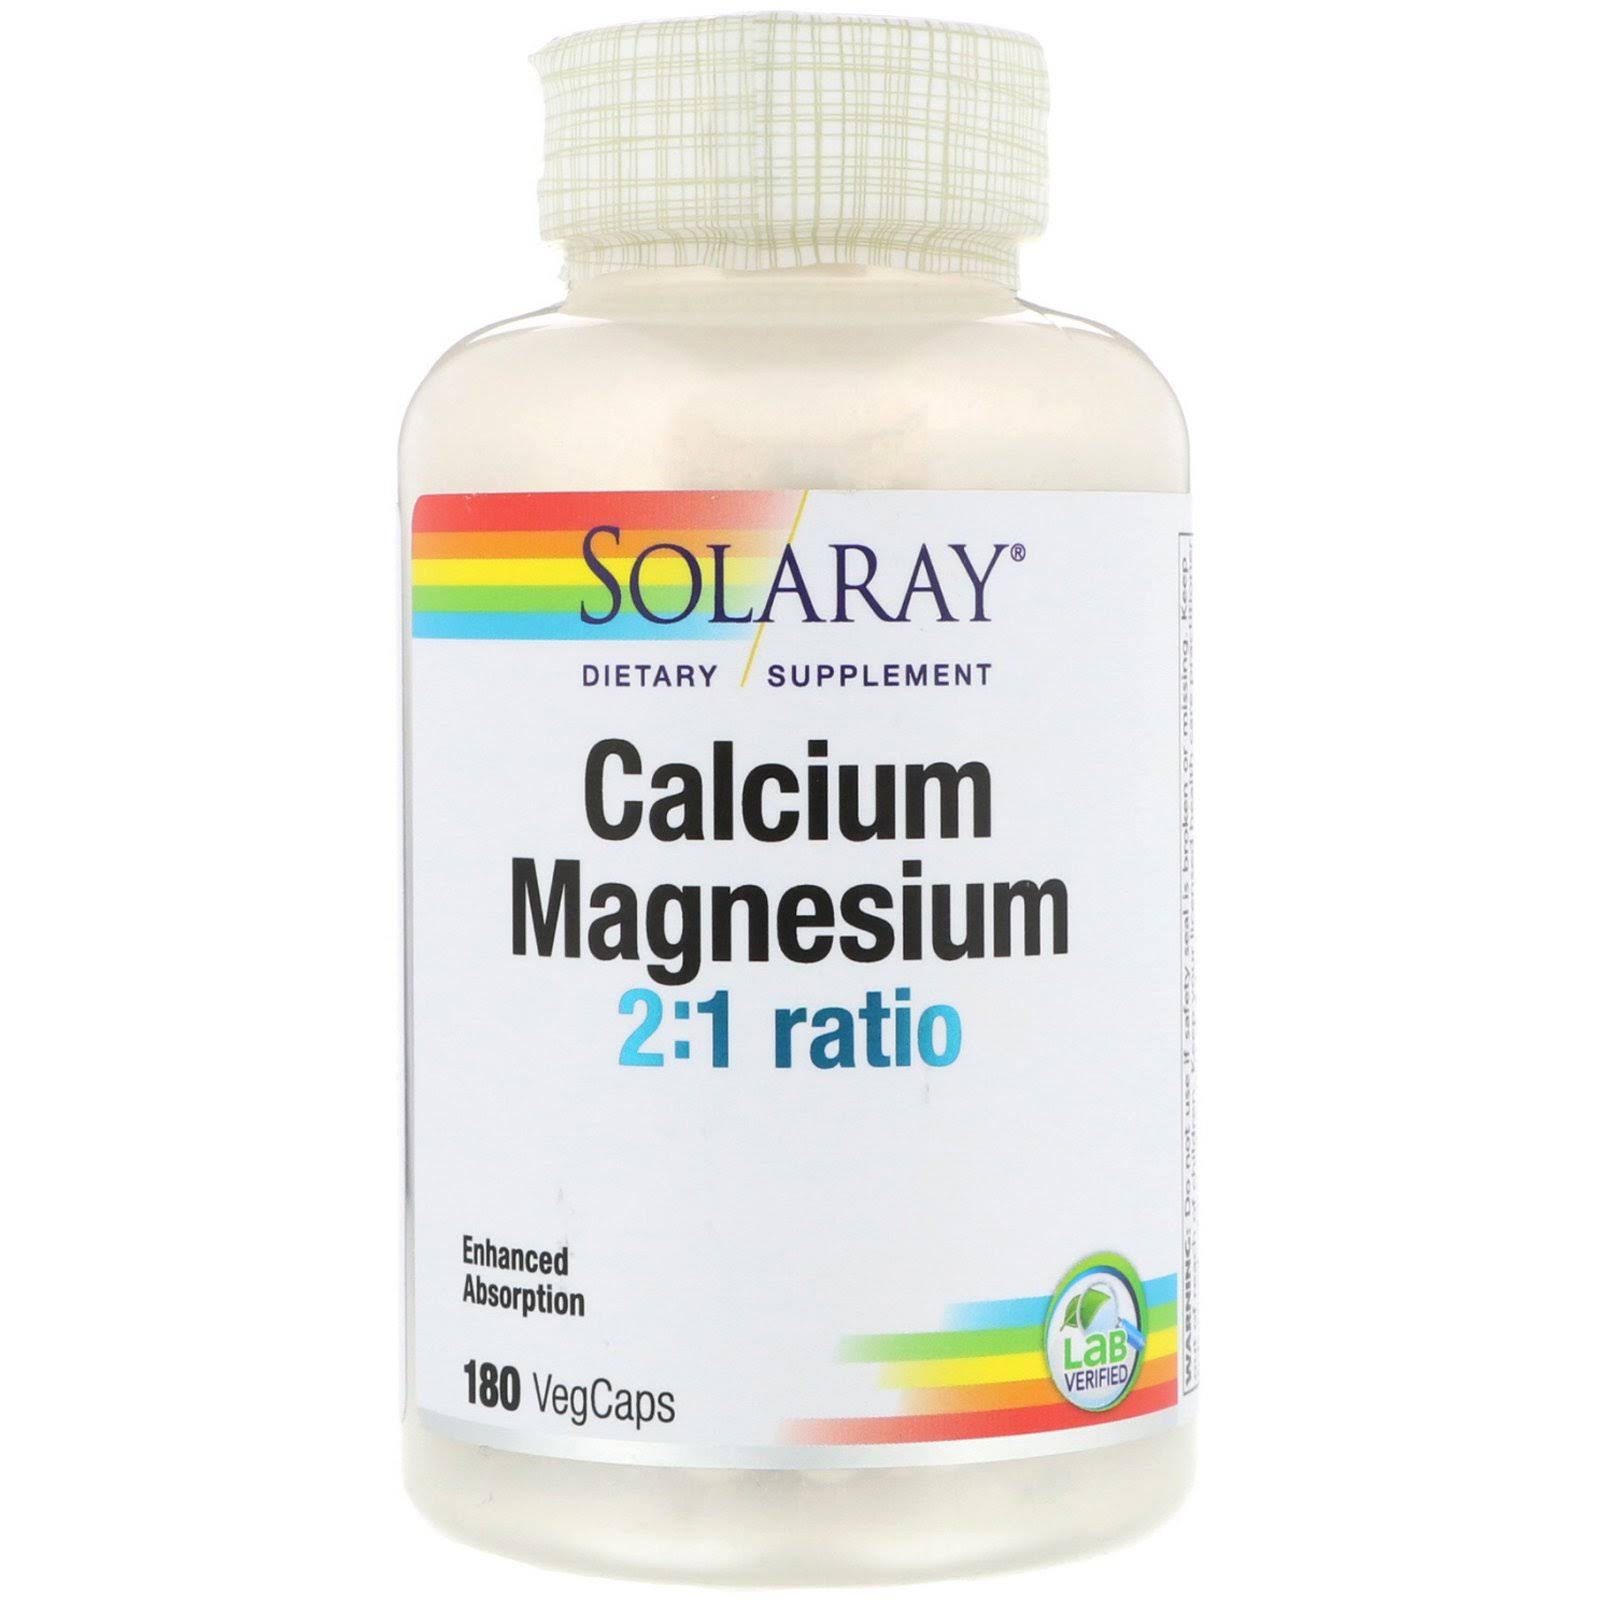 Solaray Calcium & Magnesium Capsules - 180 Pack